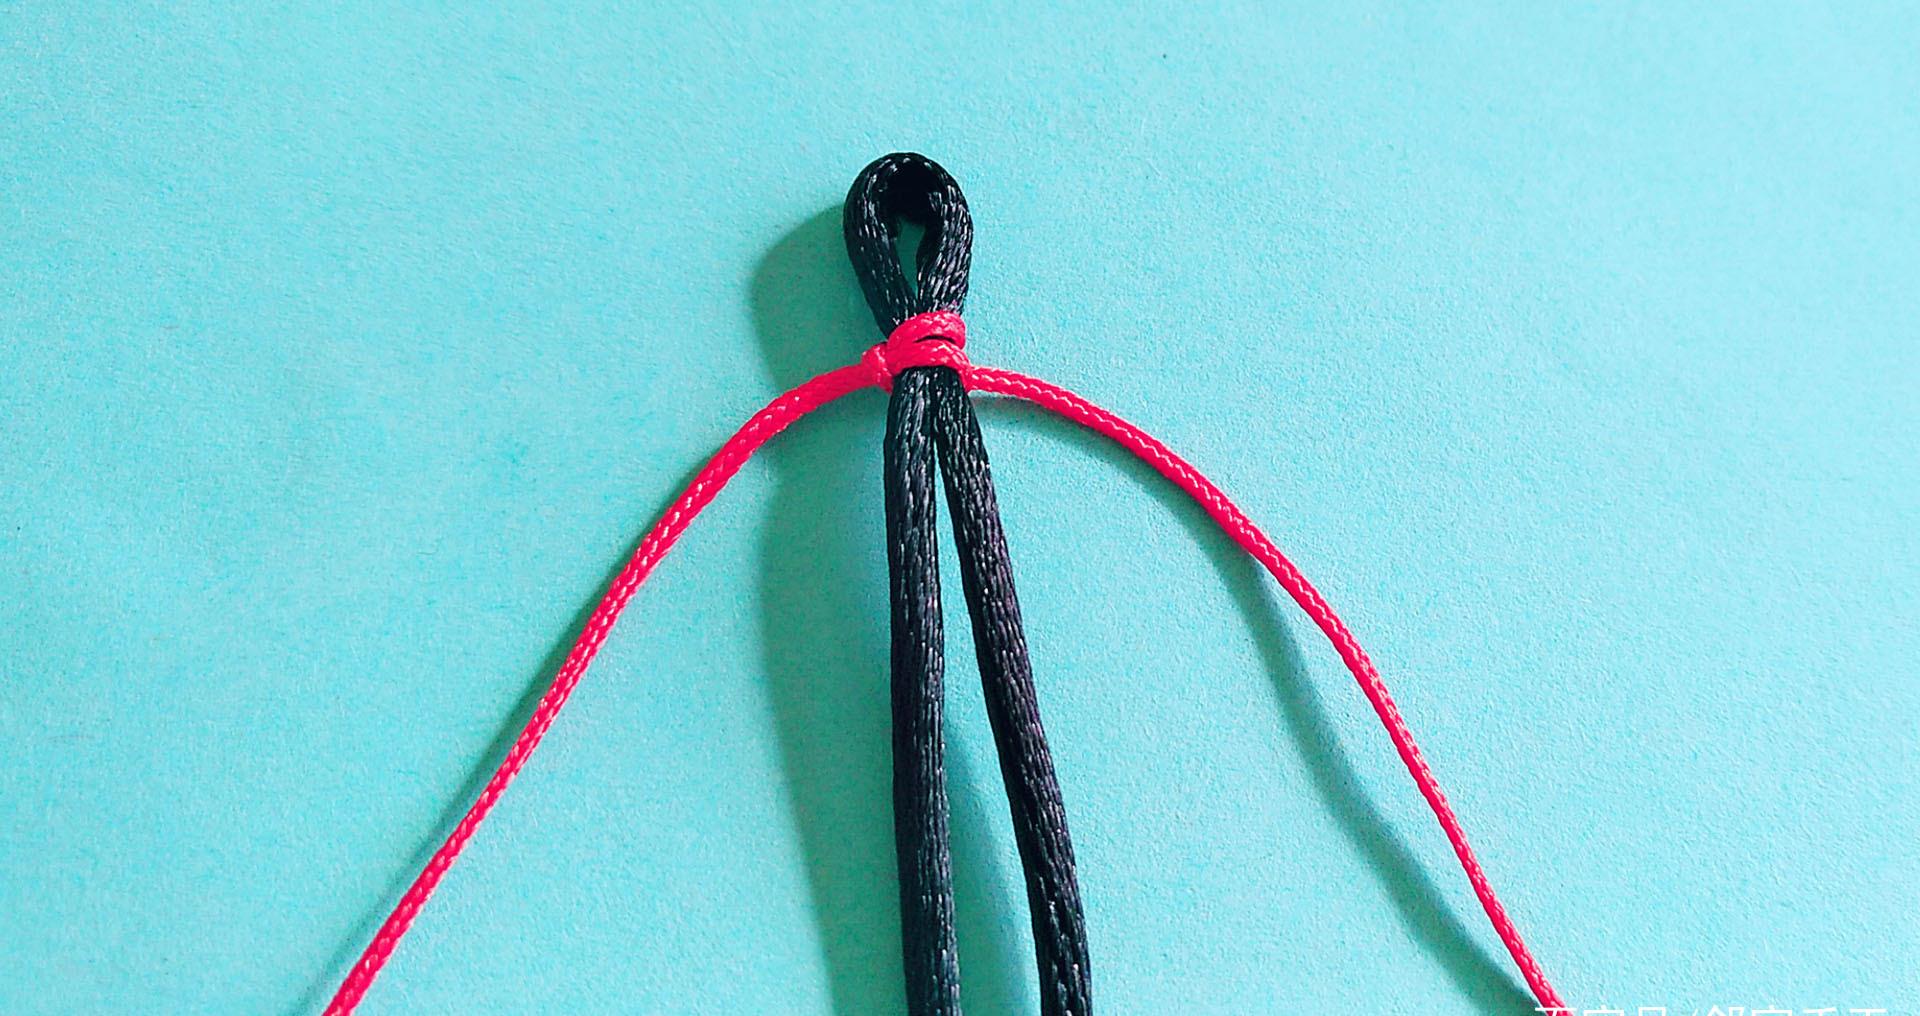 用最简单的平结编织漂亮手链，看一遍就学会，手工编绳教程